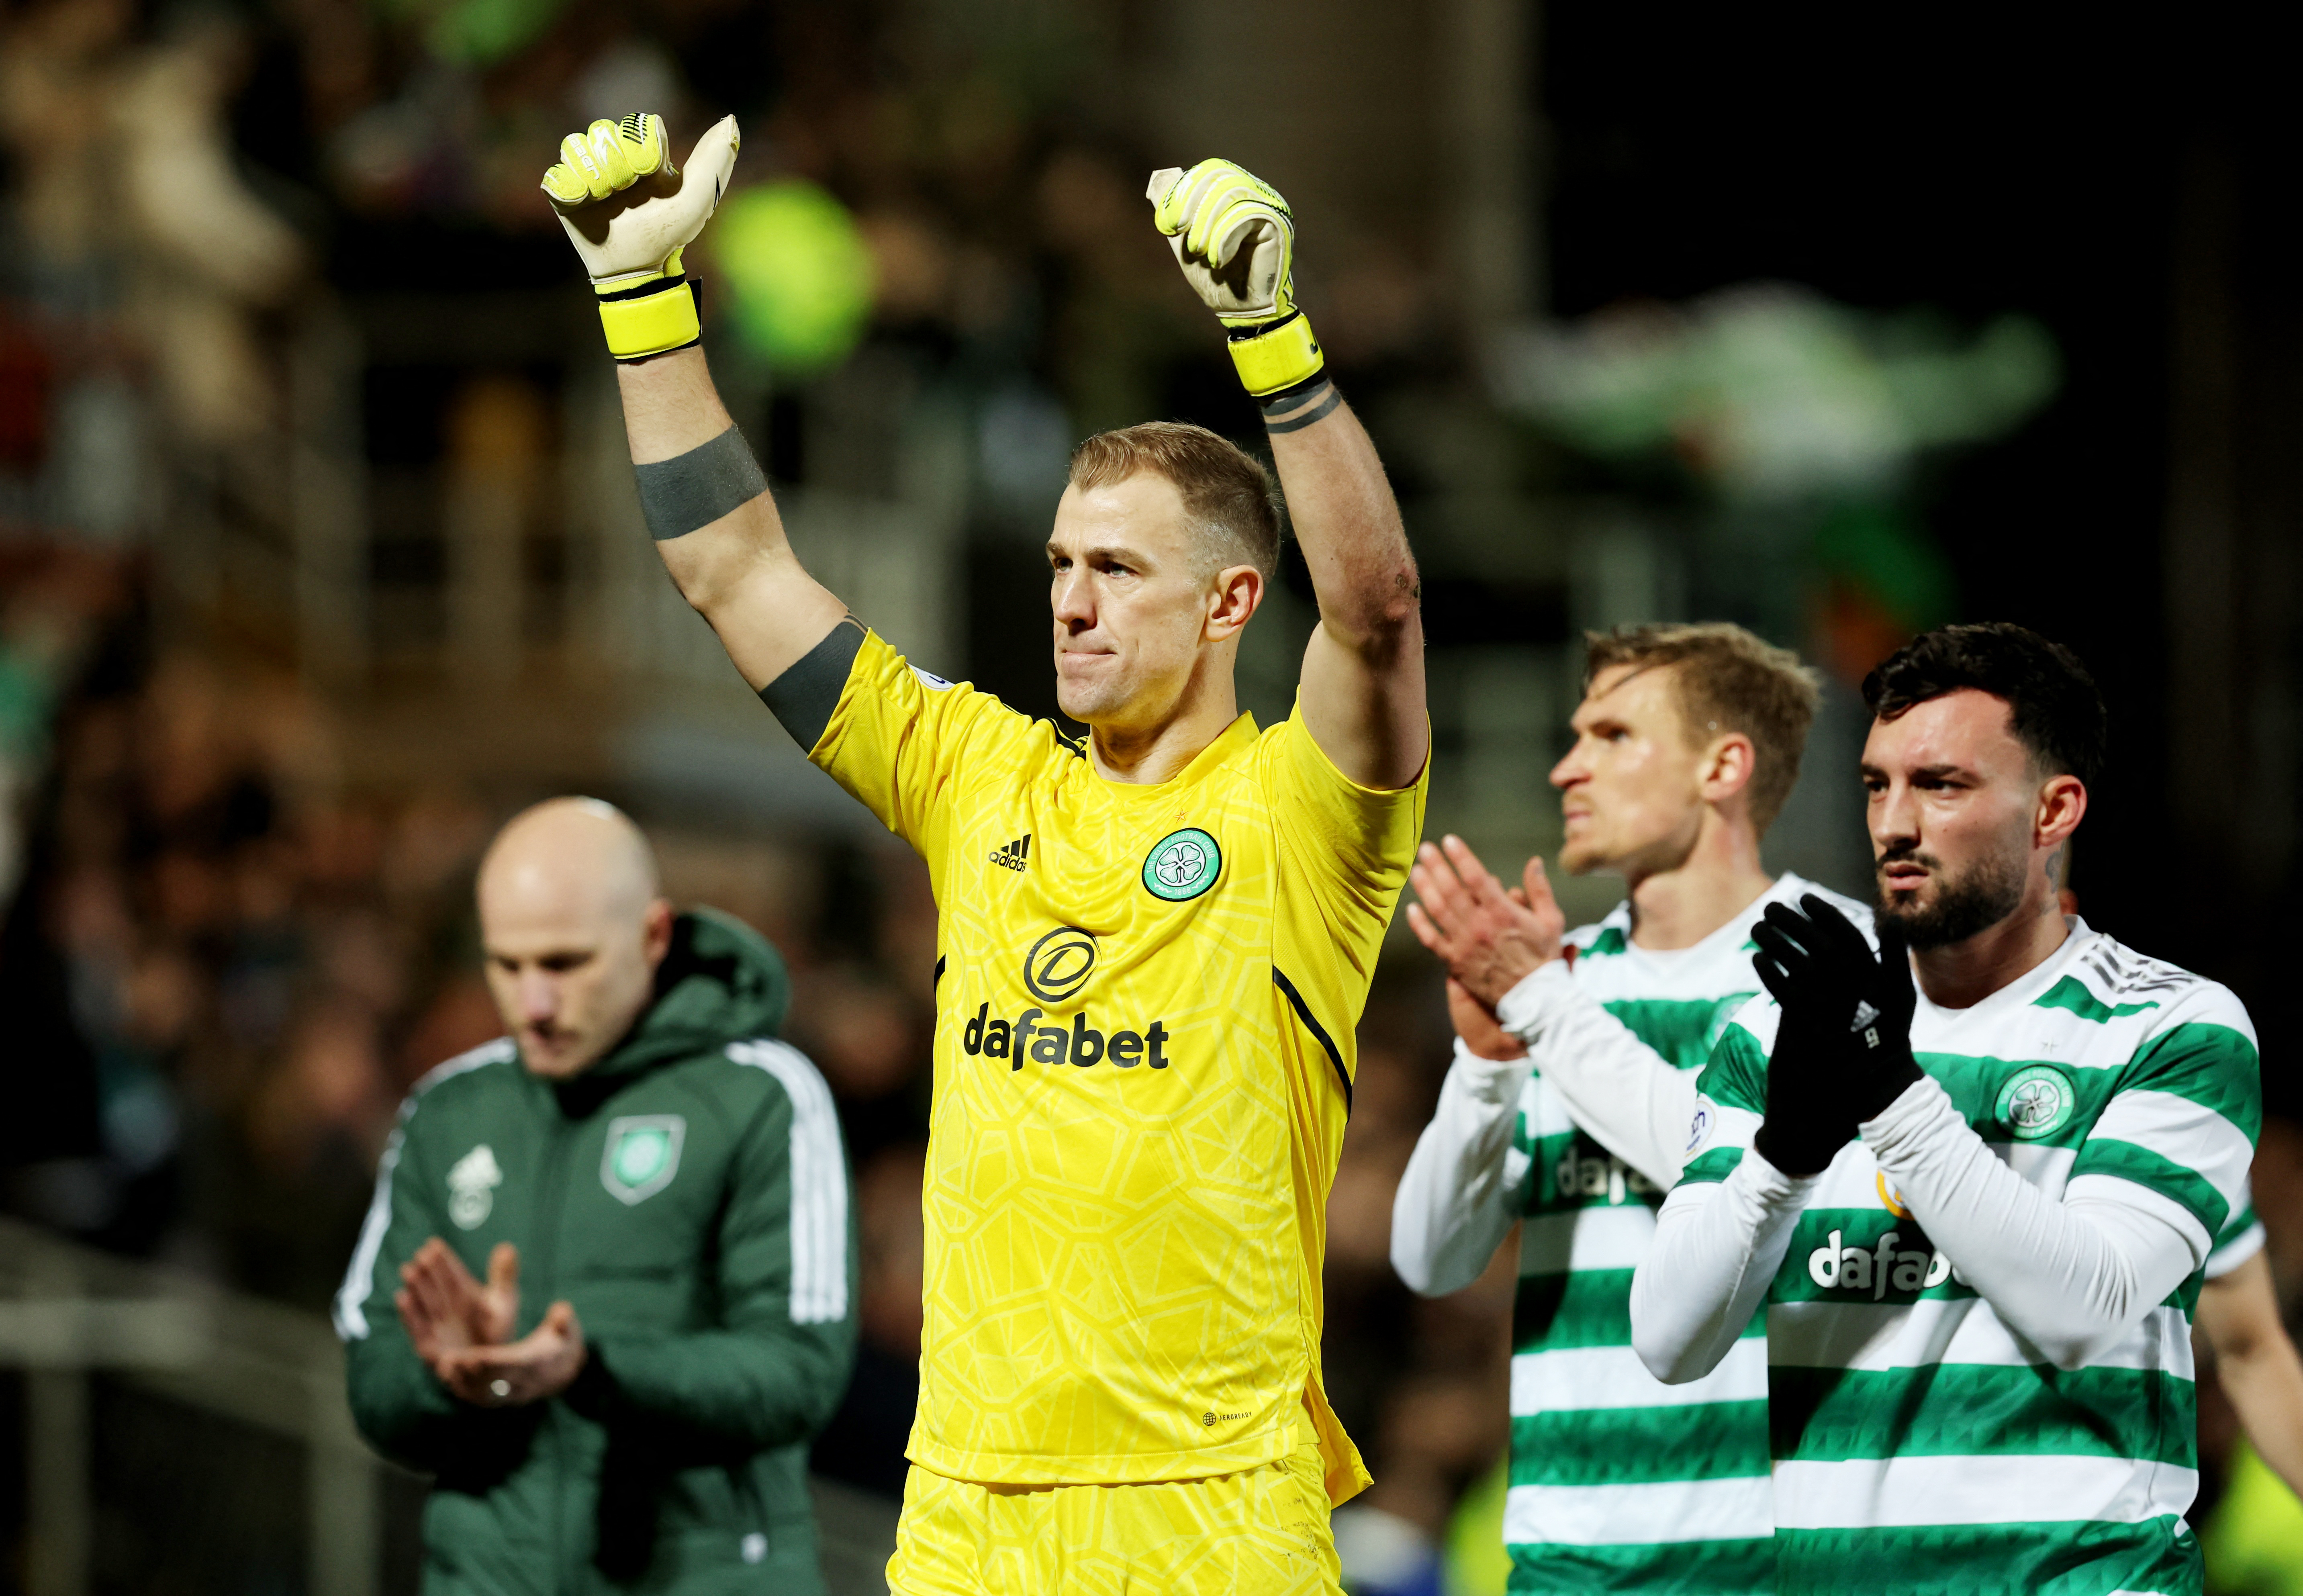 El Celtic se llevó una nueva victoria y lidera la Premier League de Escocia por 9 puntos sobre el Rangers (Foto: Reuters)